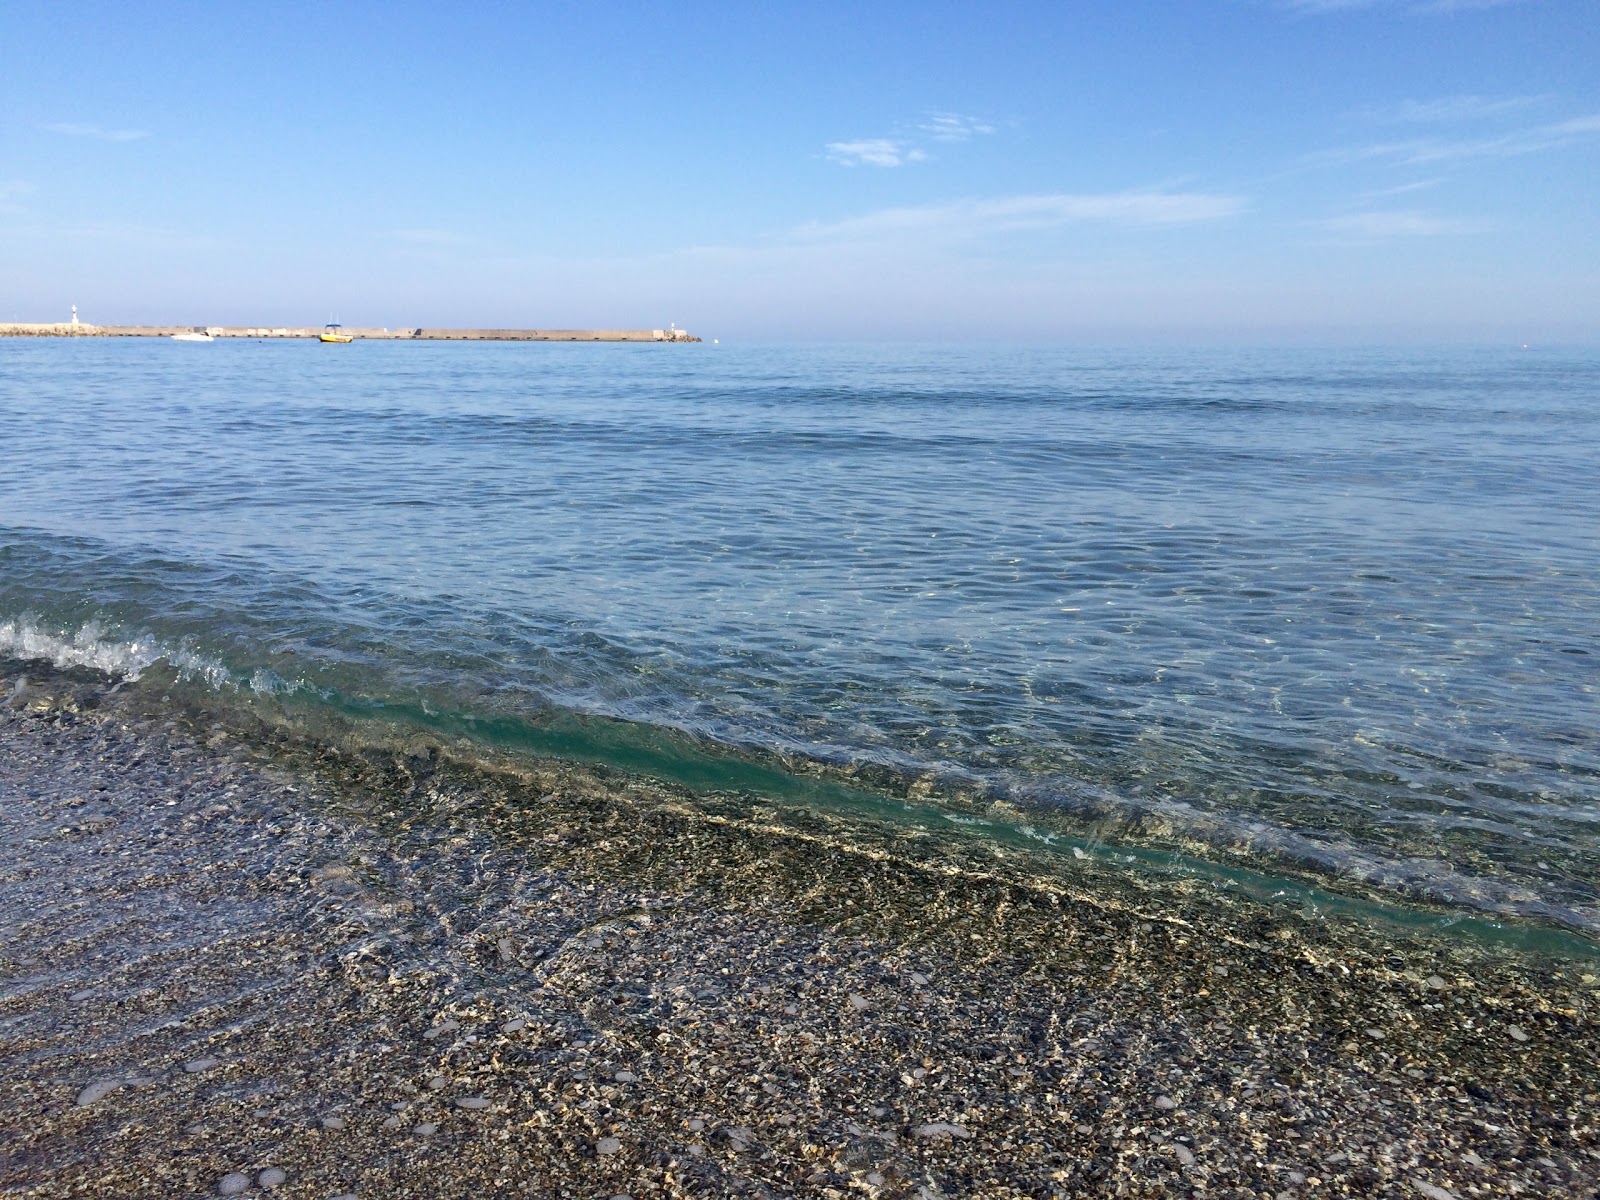 Valokuva Rethymnon beachista. pinnalla turkoosi puhdas vesi:n kanssa